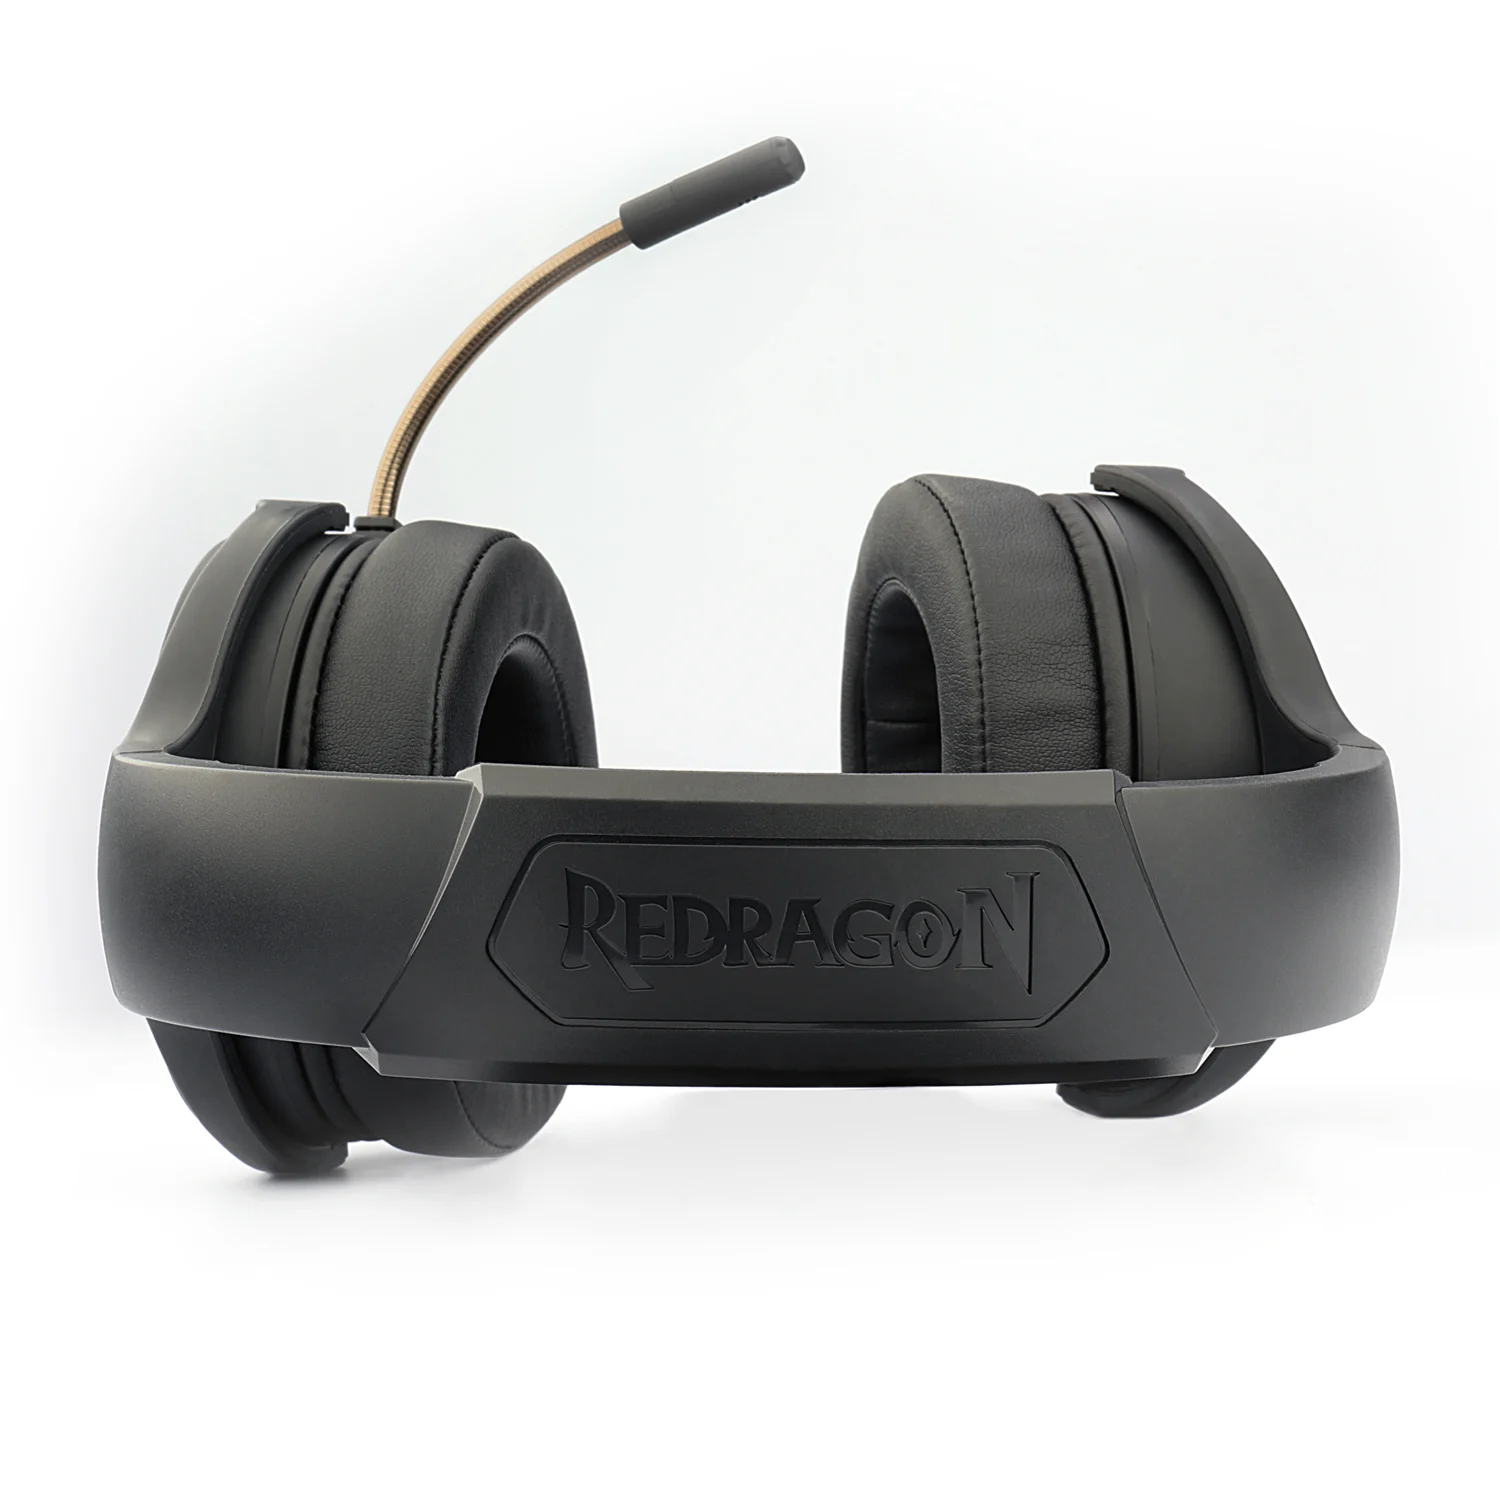 Headset Gamer Redragon Pelops H818 Wireless / C/Transmissor USB- Preto e Vermelho